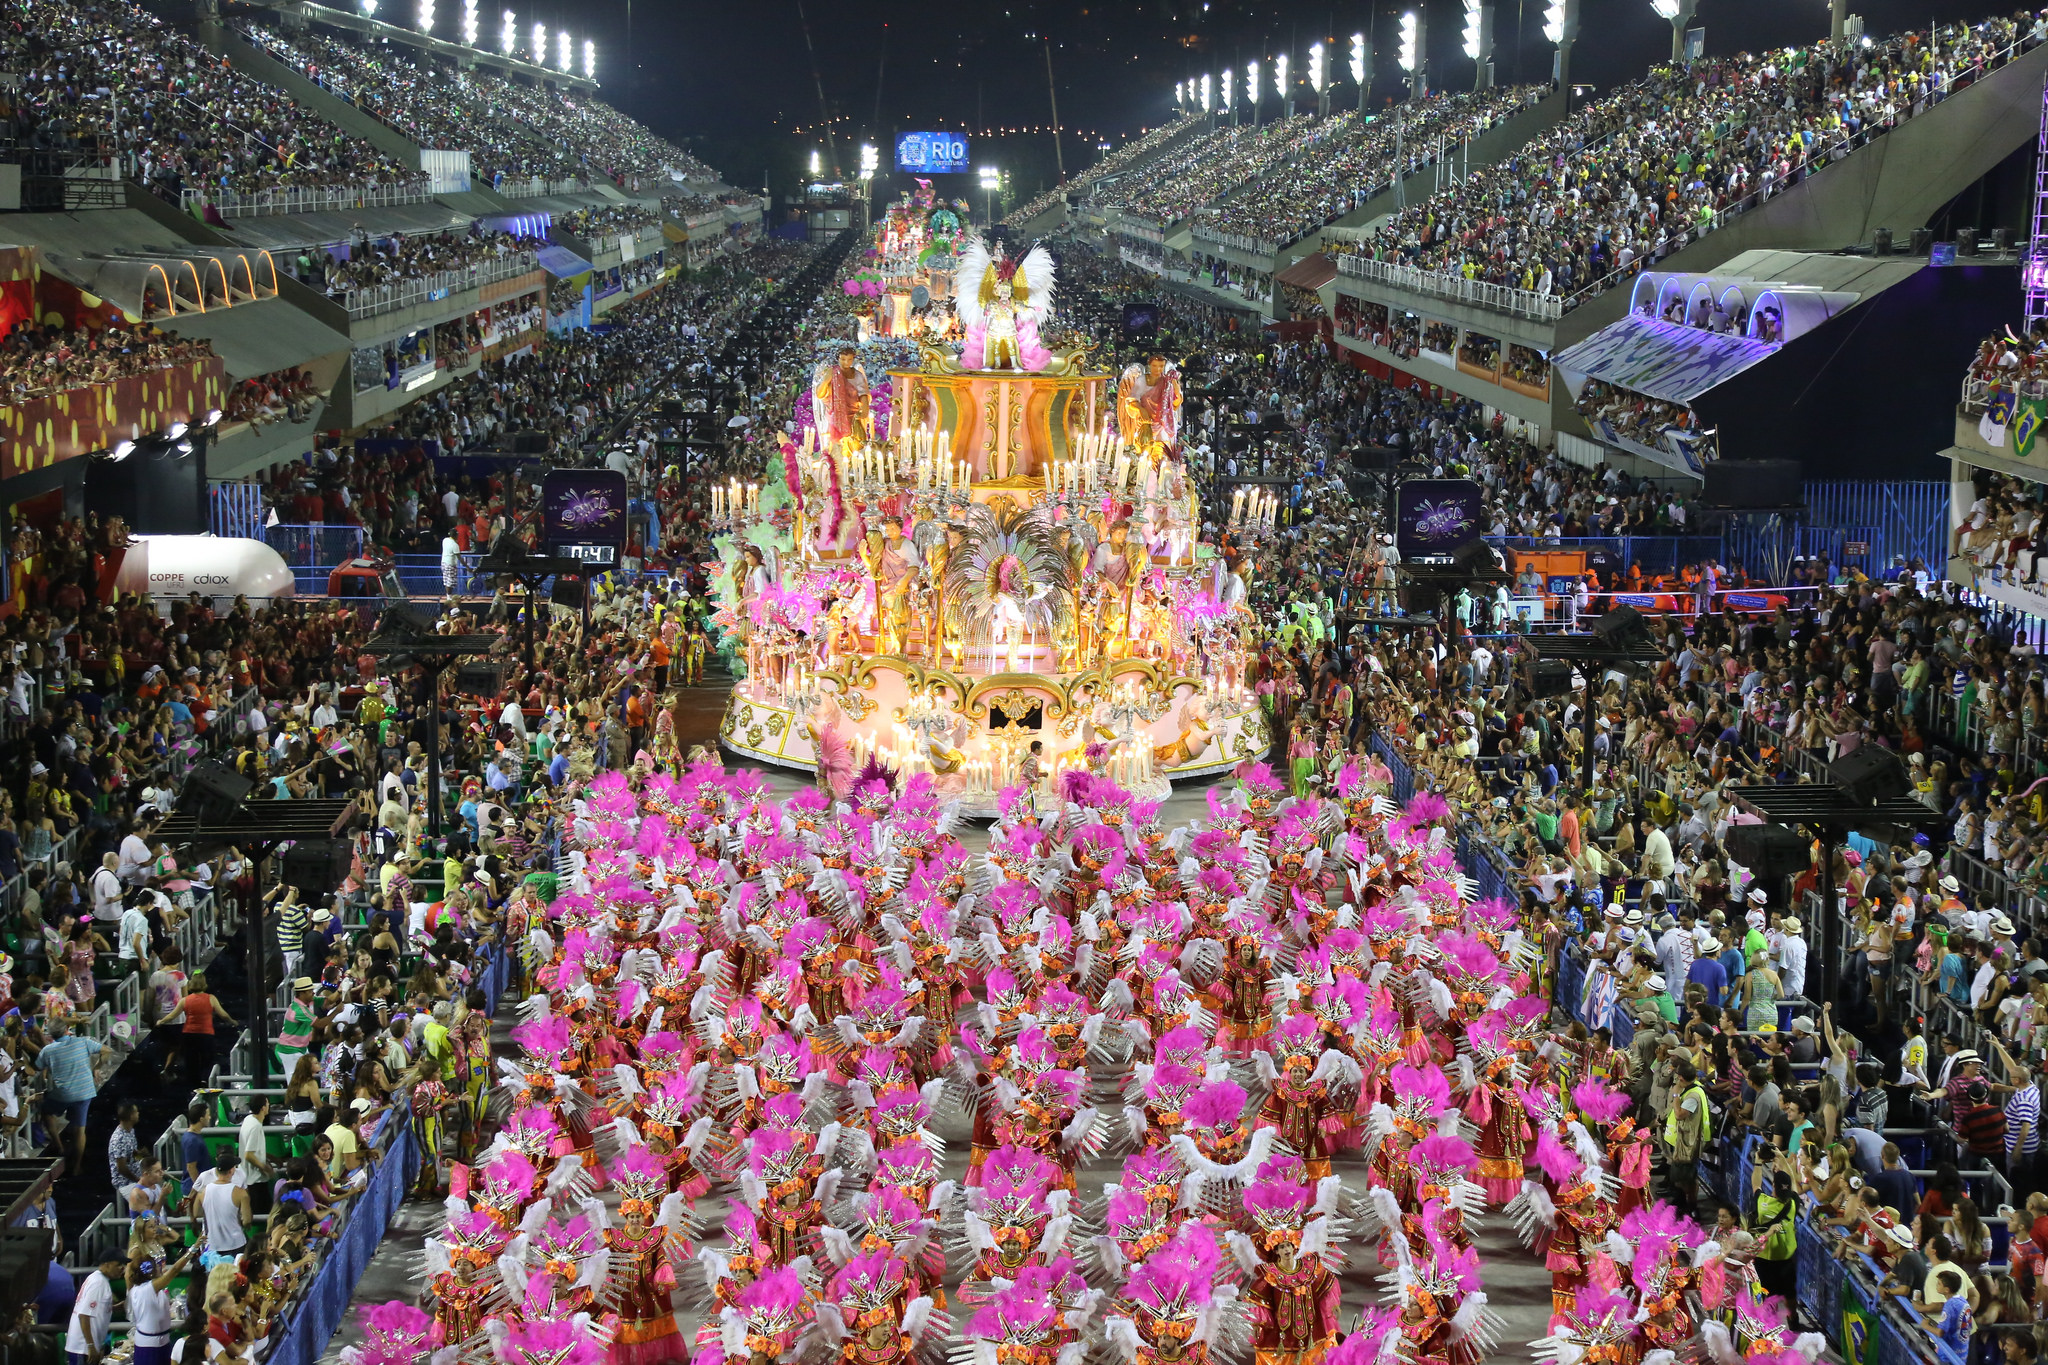 Going to the Sambódromo for Carnival 2015 in Rio de Janeiro